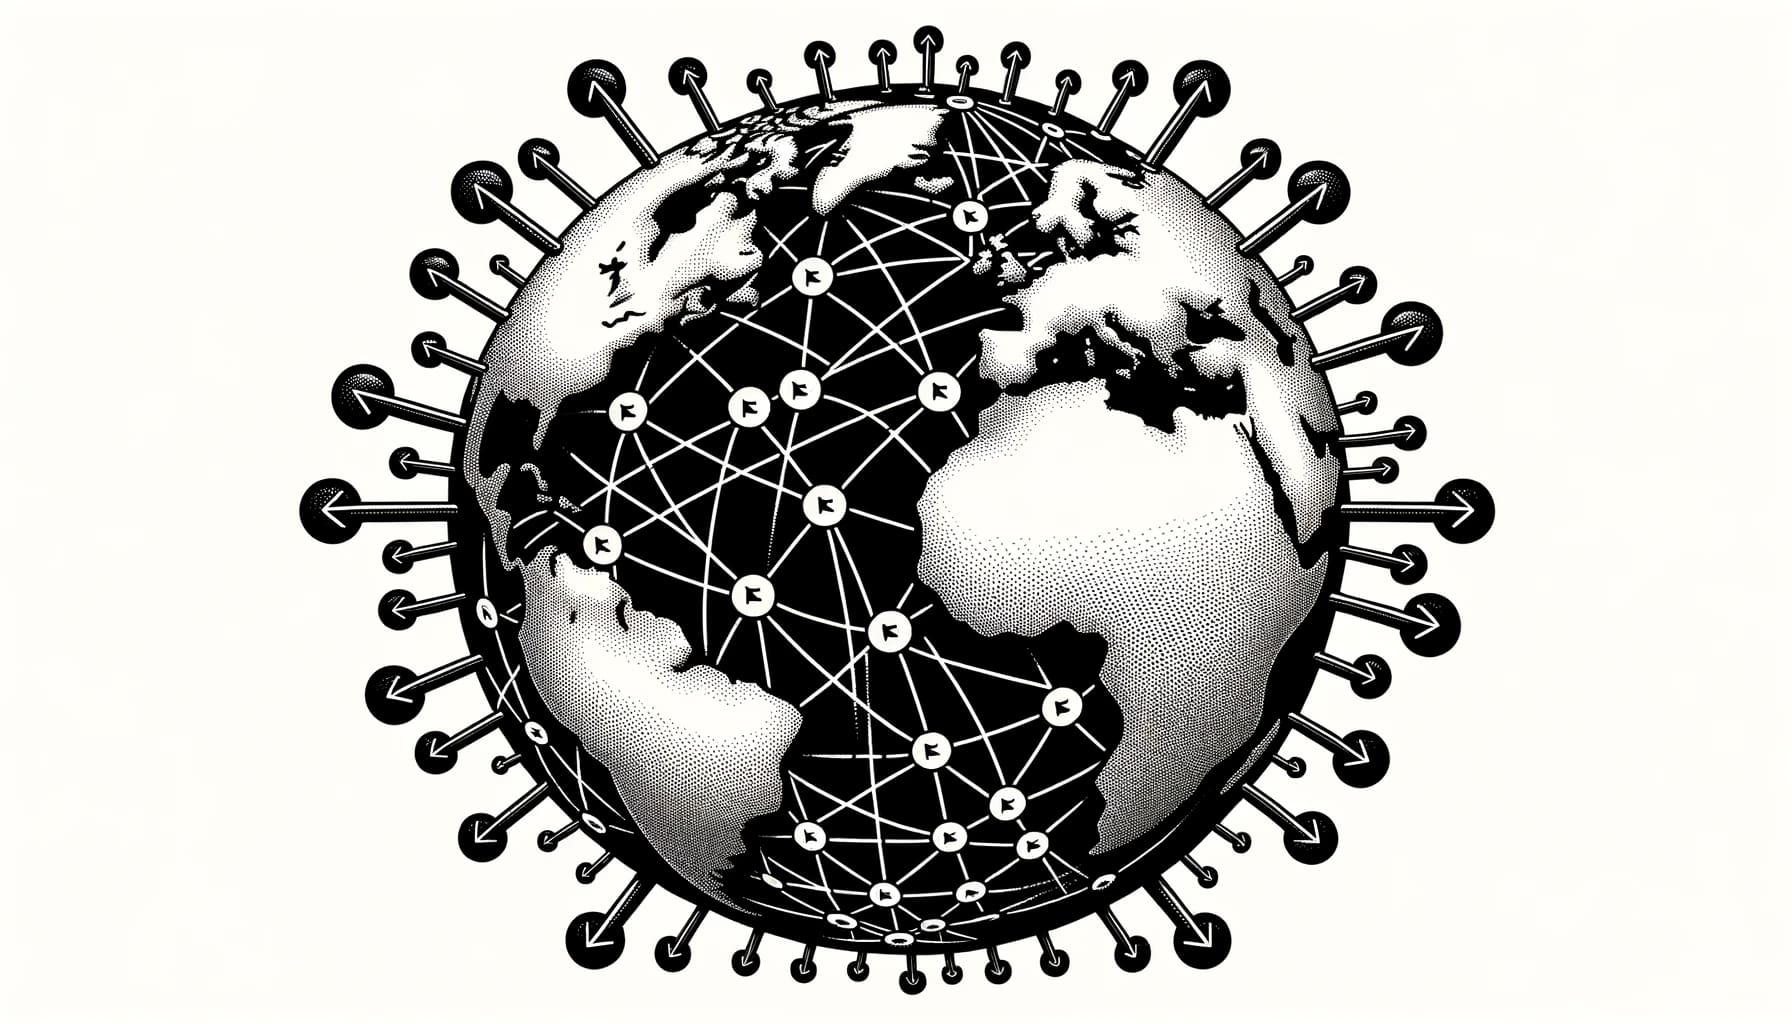 Weltkugel mit miteinander verbundenen Linkknoten